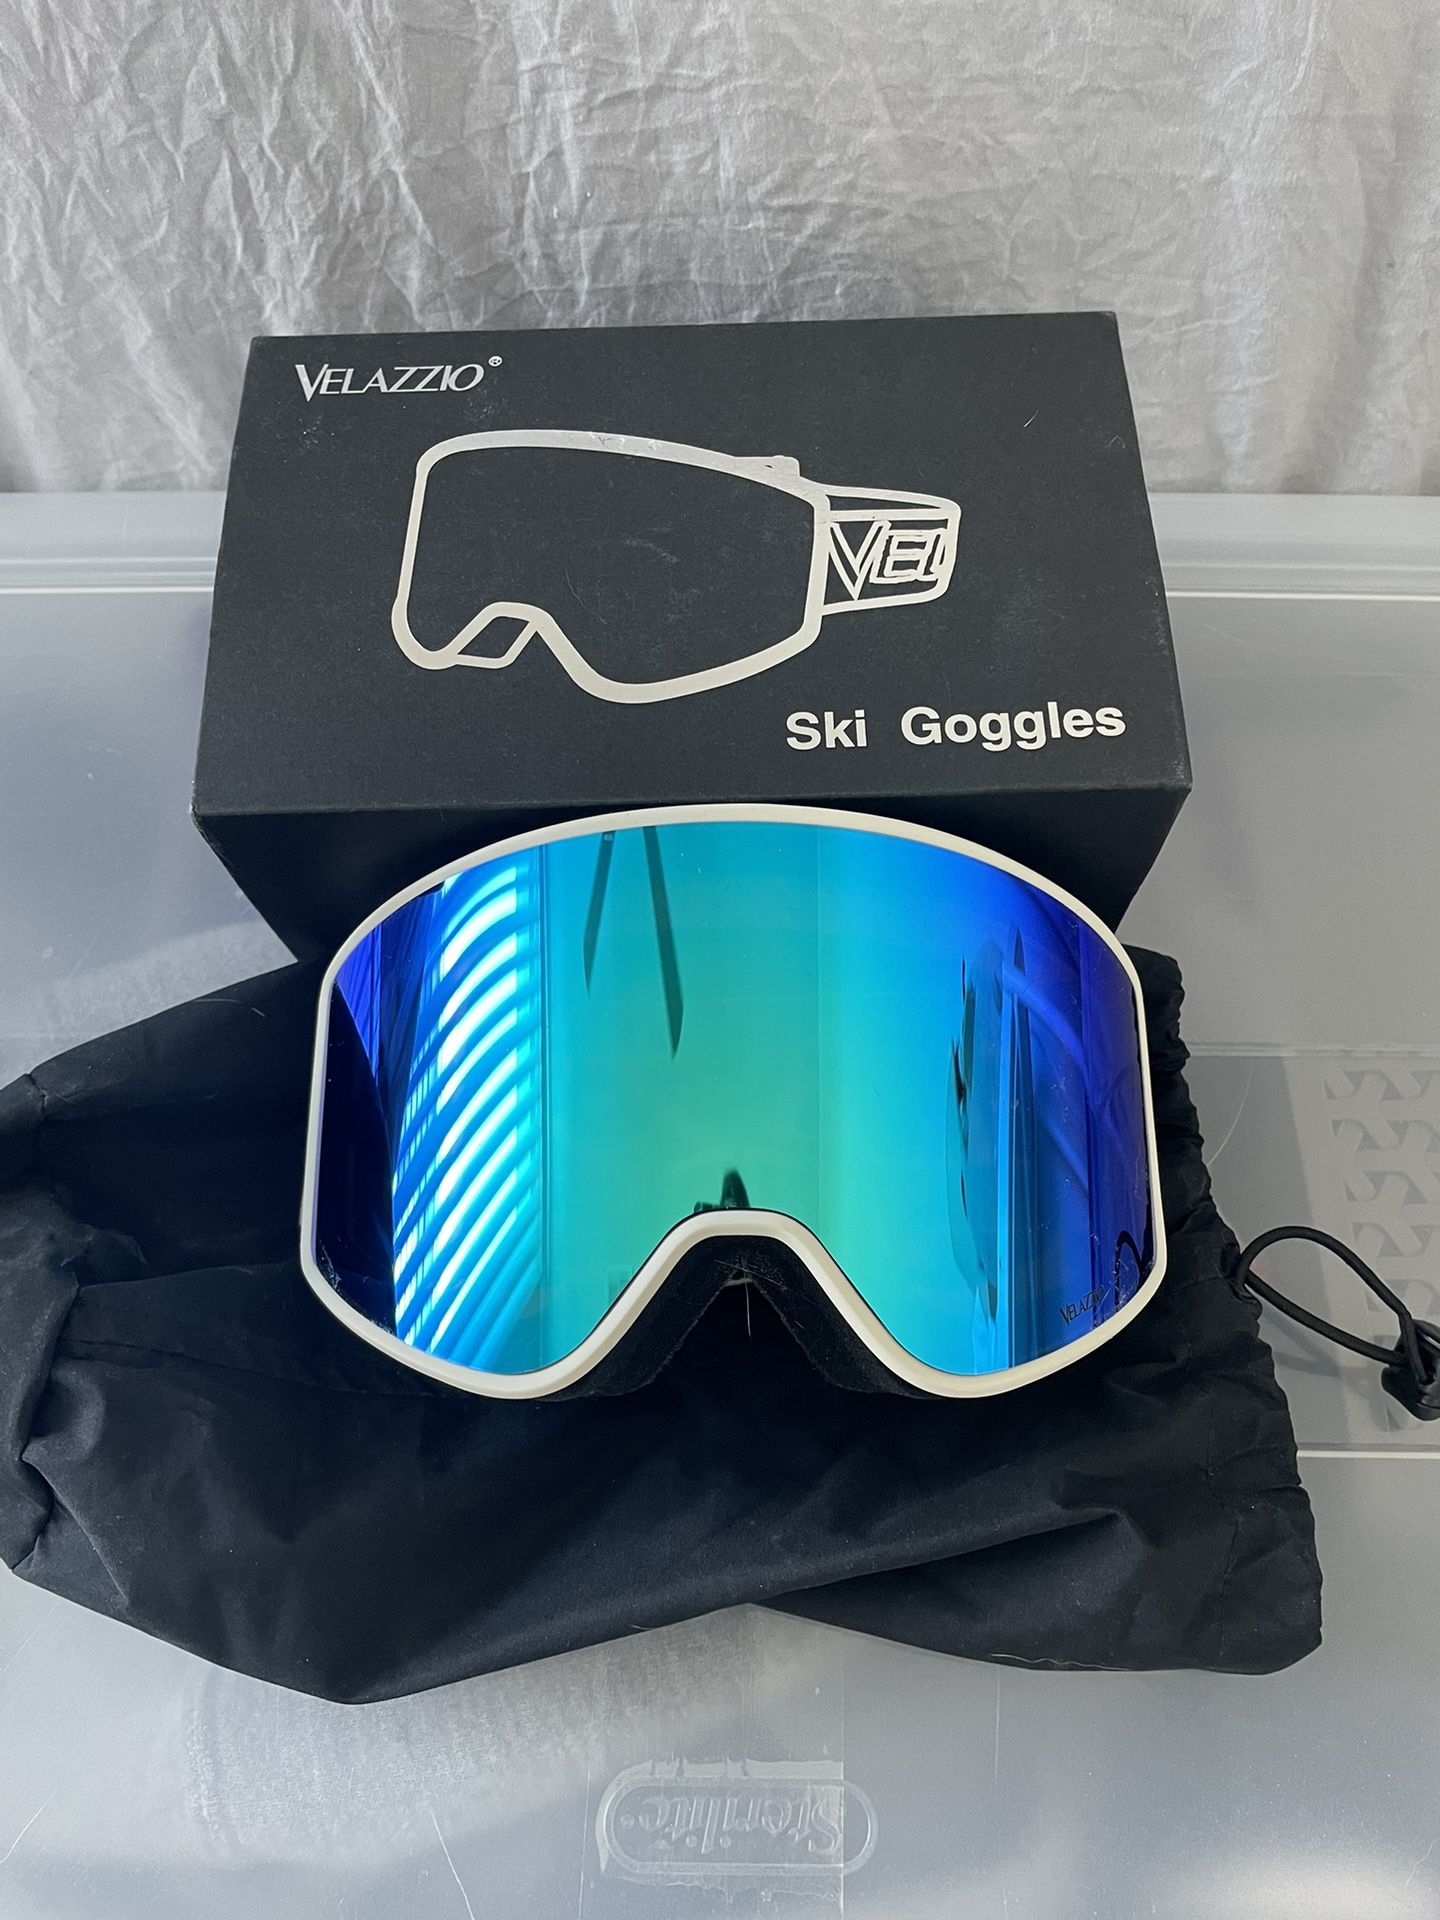 Velazzio Ski Goggles